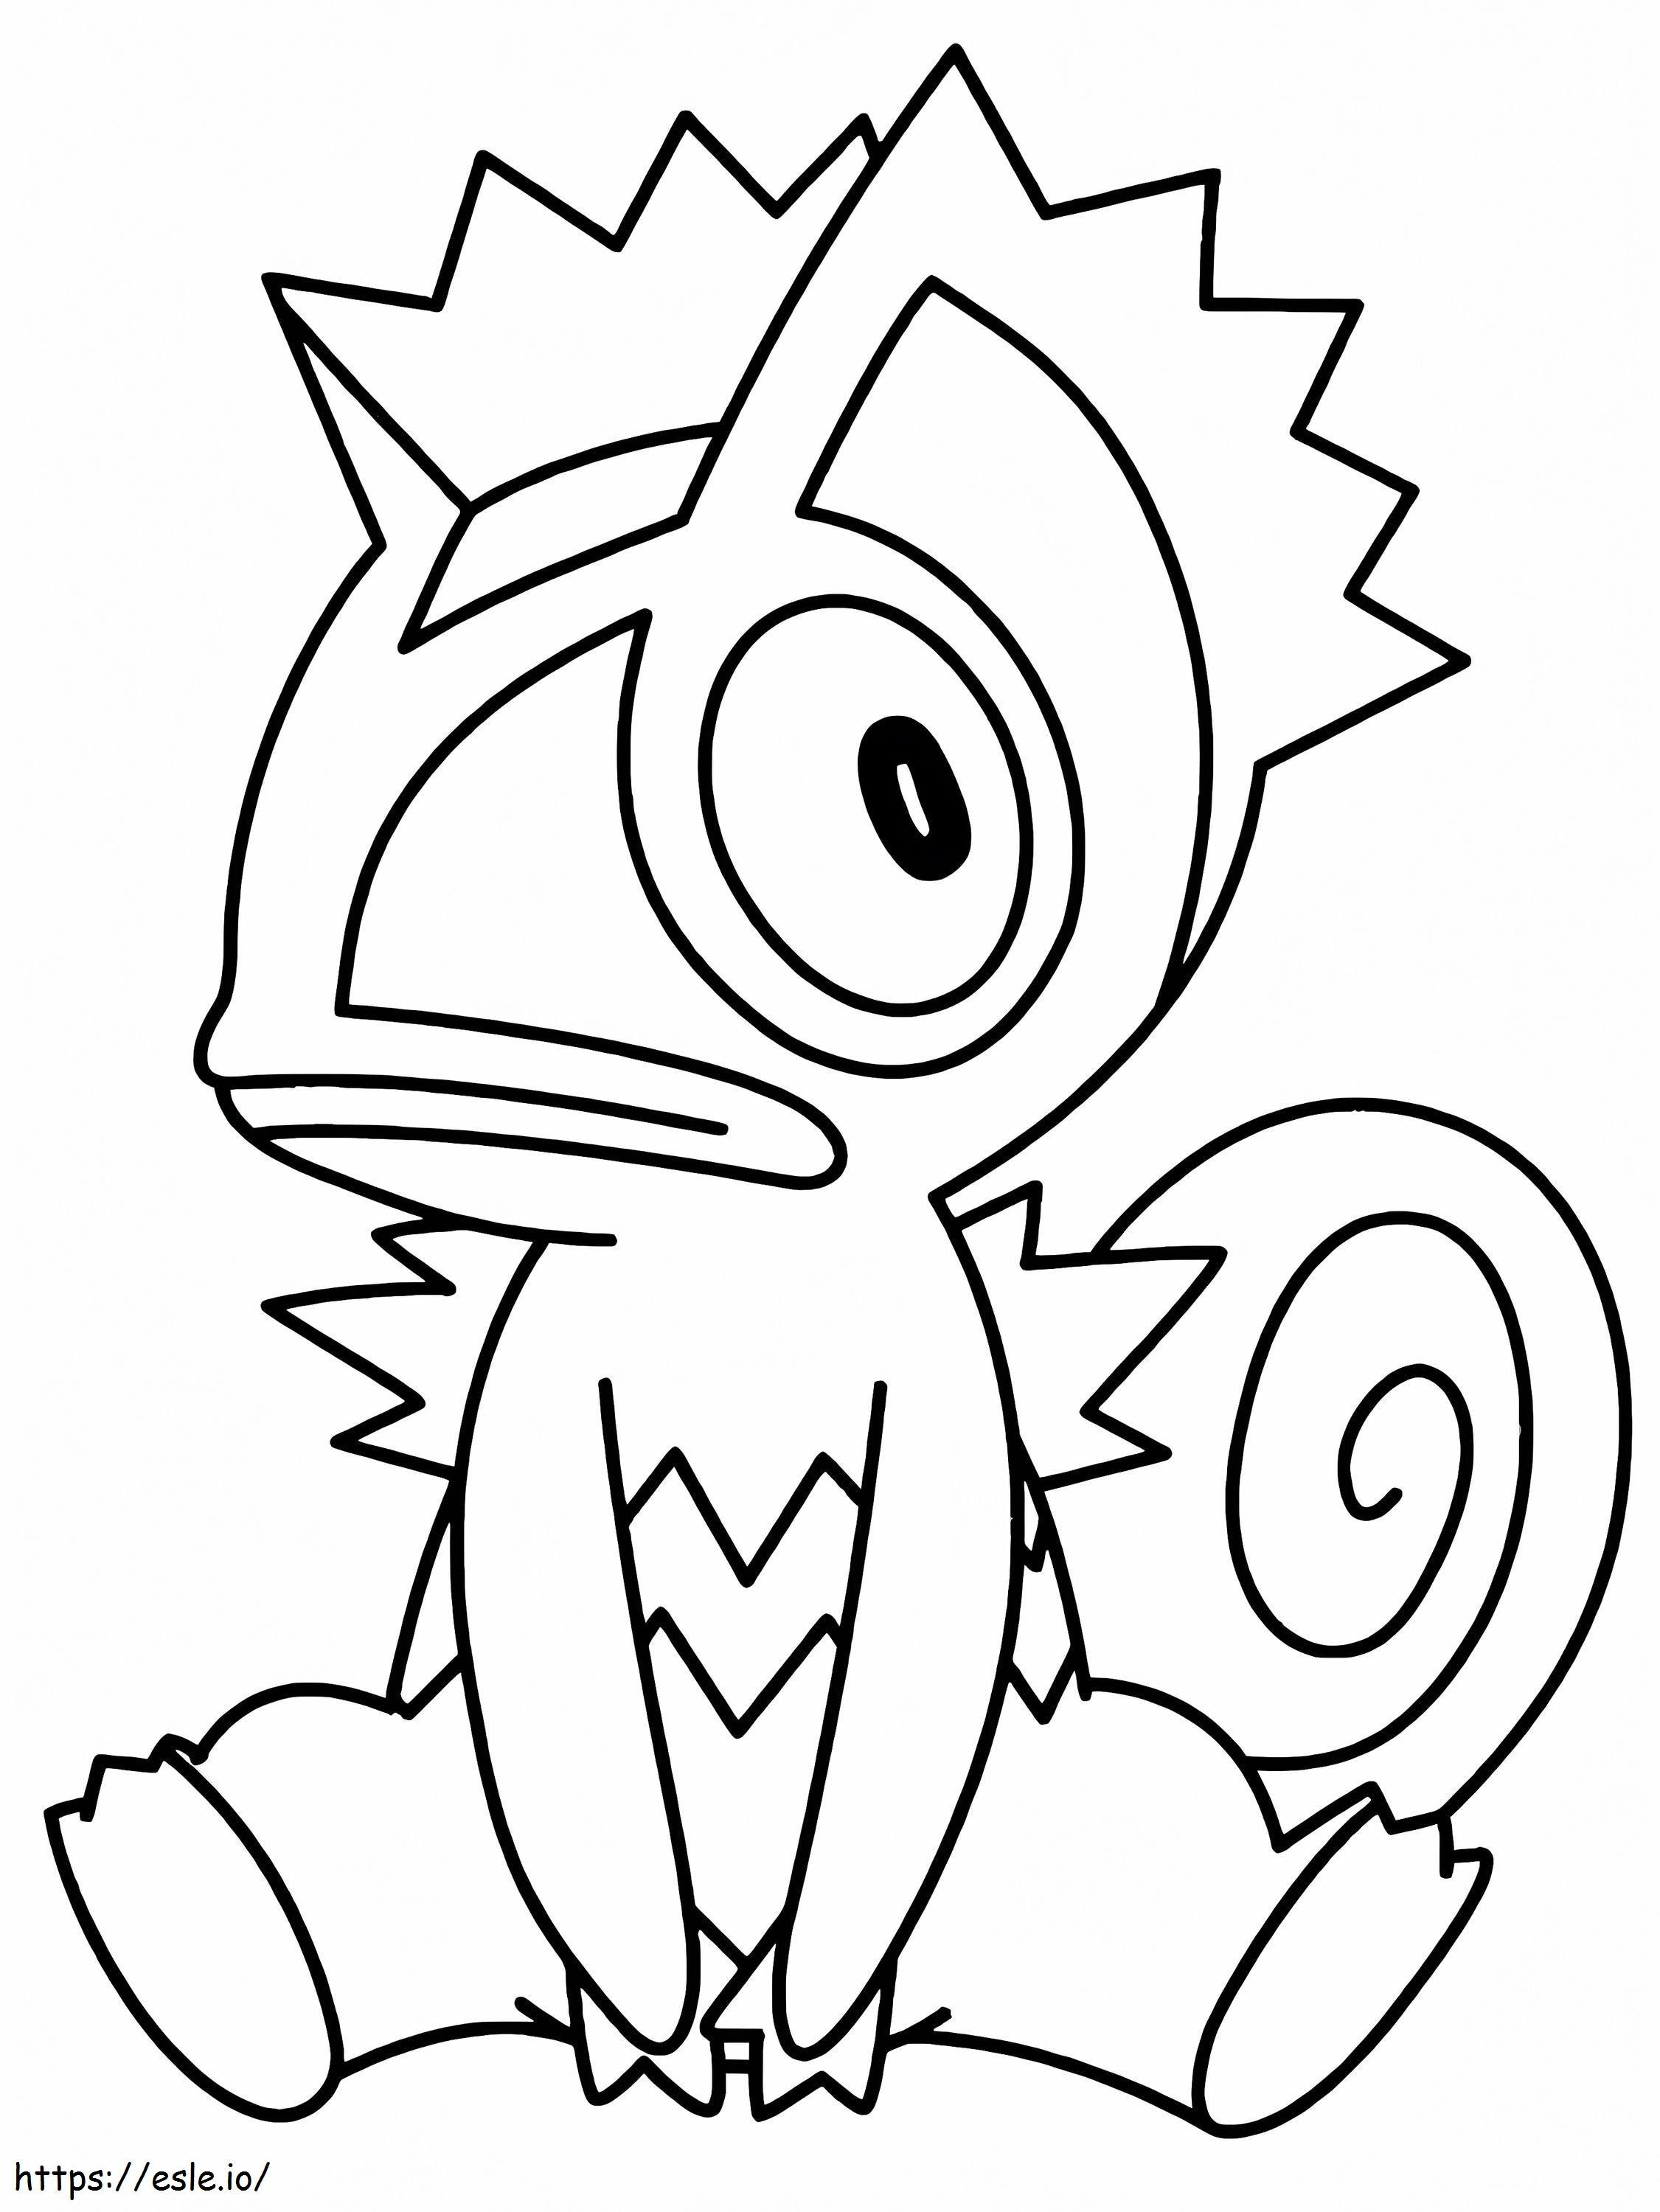 Coloriage Imprimer Kecleon Pokémon à imprimer dessin